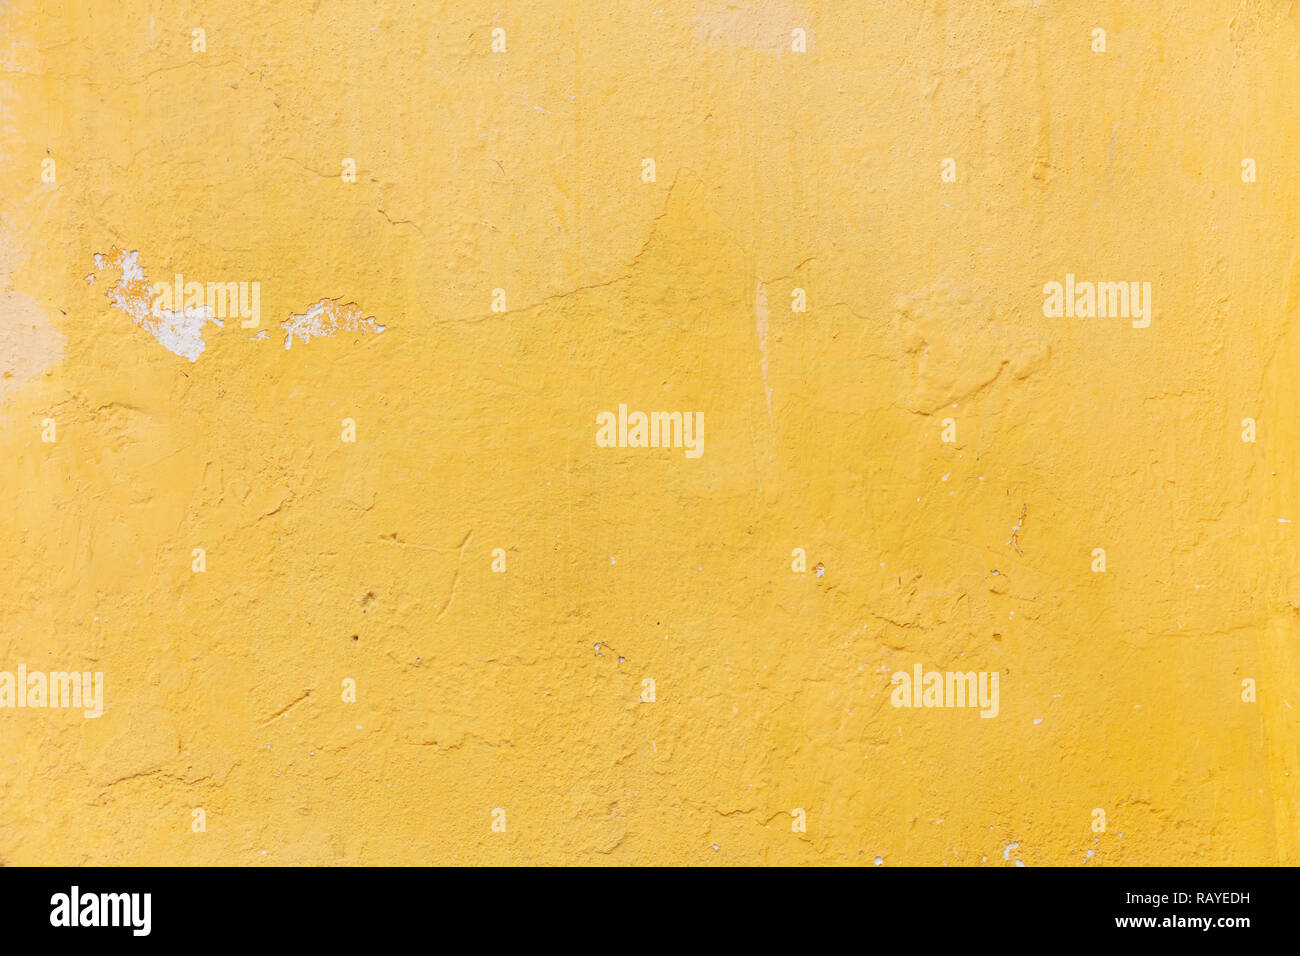 Couleur jaune vif, mur peint. Weathered et a disparu à la texture, grunge background. La façade extérieure d'un bâtiment résidentiel Banque D'Images